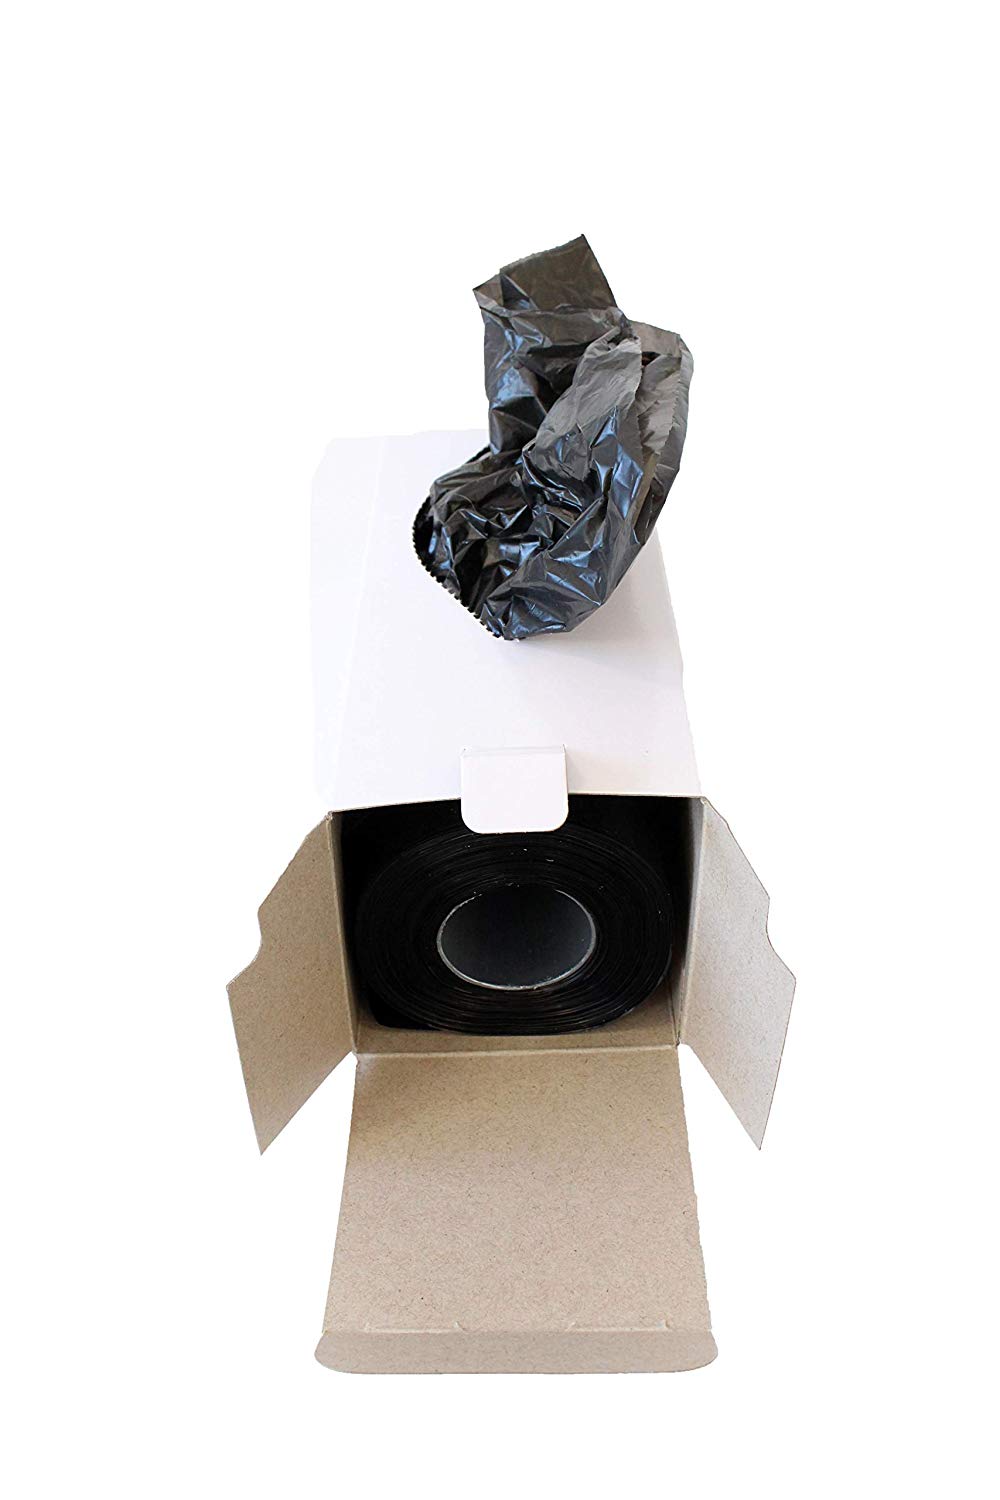 Midlee Dog Waste Station Poop Bag Refills - 200 Count